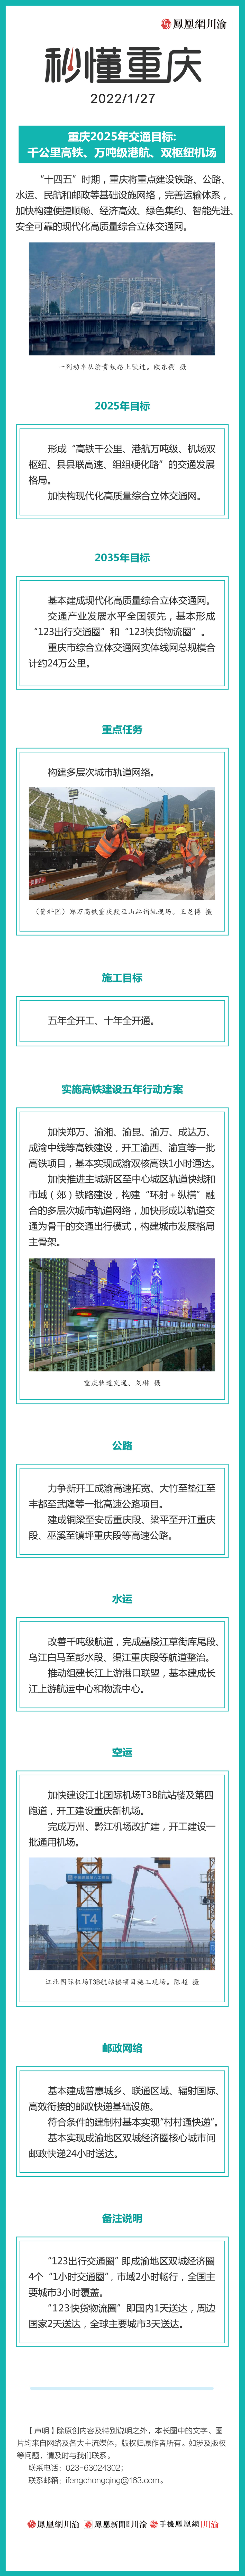 秒懂重庆 | 重庆2025年交通目标:千公里高铁、万吨级港航、双枢纽机场